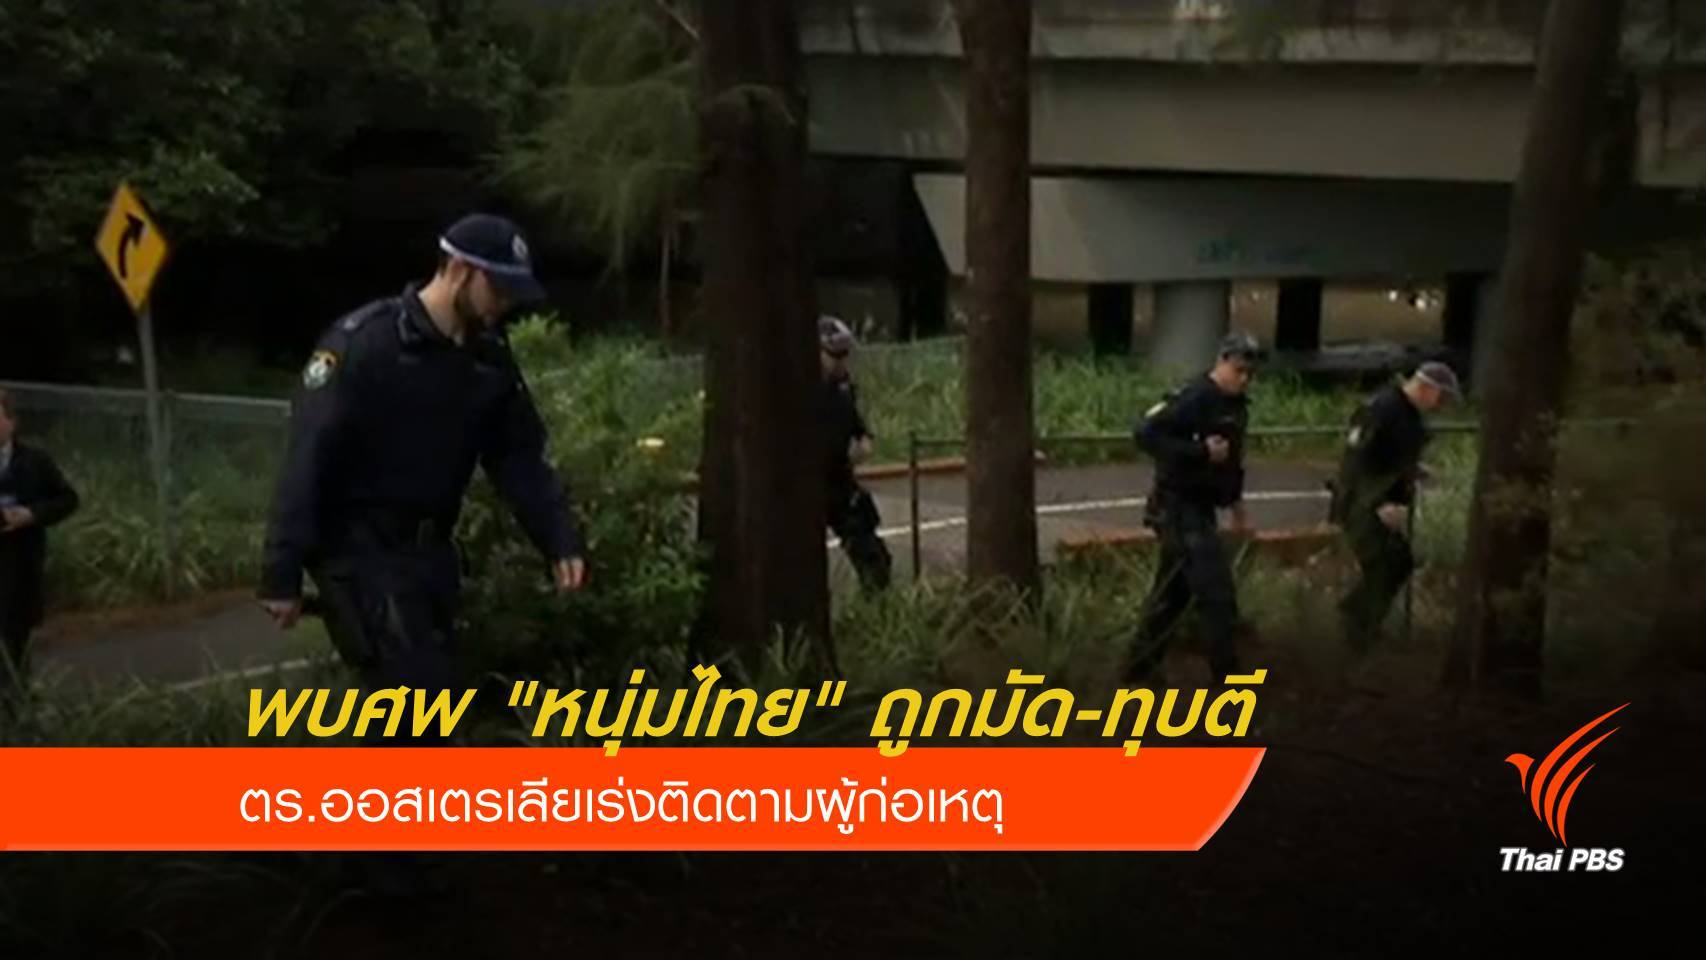 ตร.ออสเตรเลีย เร่งจับมือฆ่า "หนุ่มไทย" ถูกมัดทิ้งริมถนน